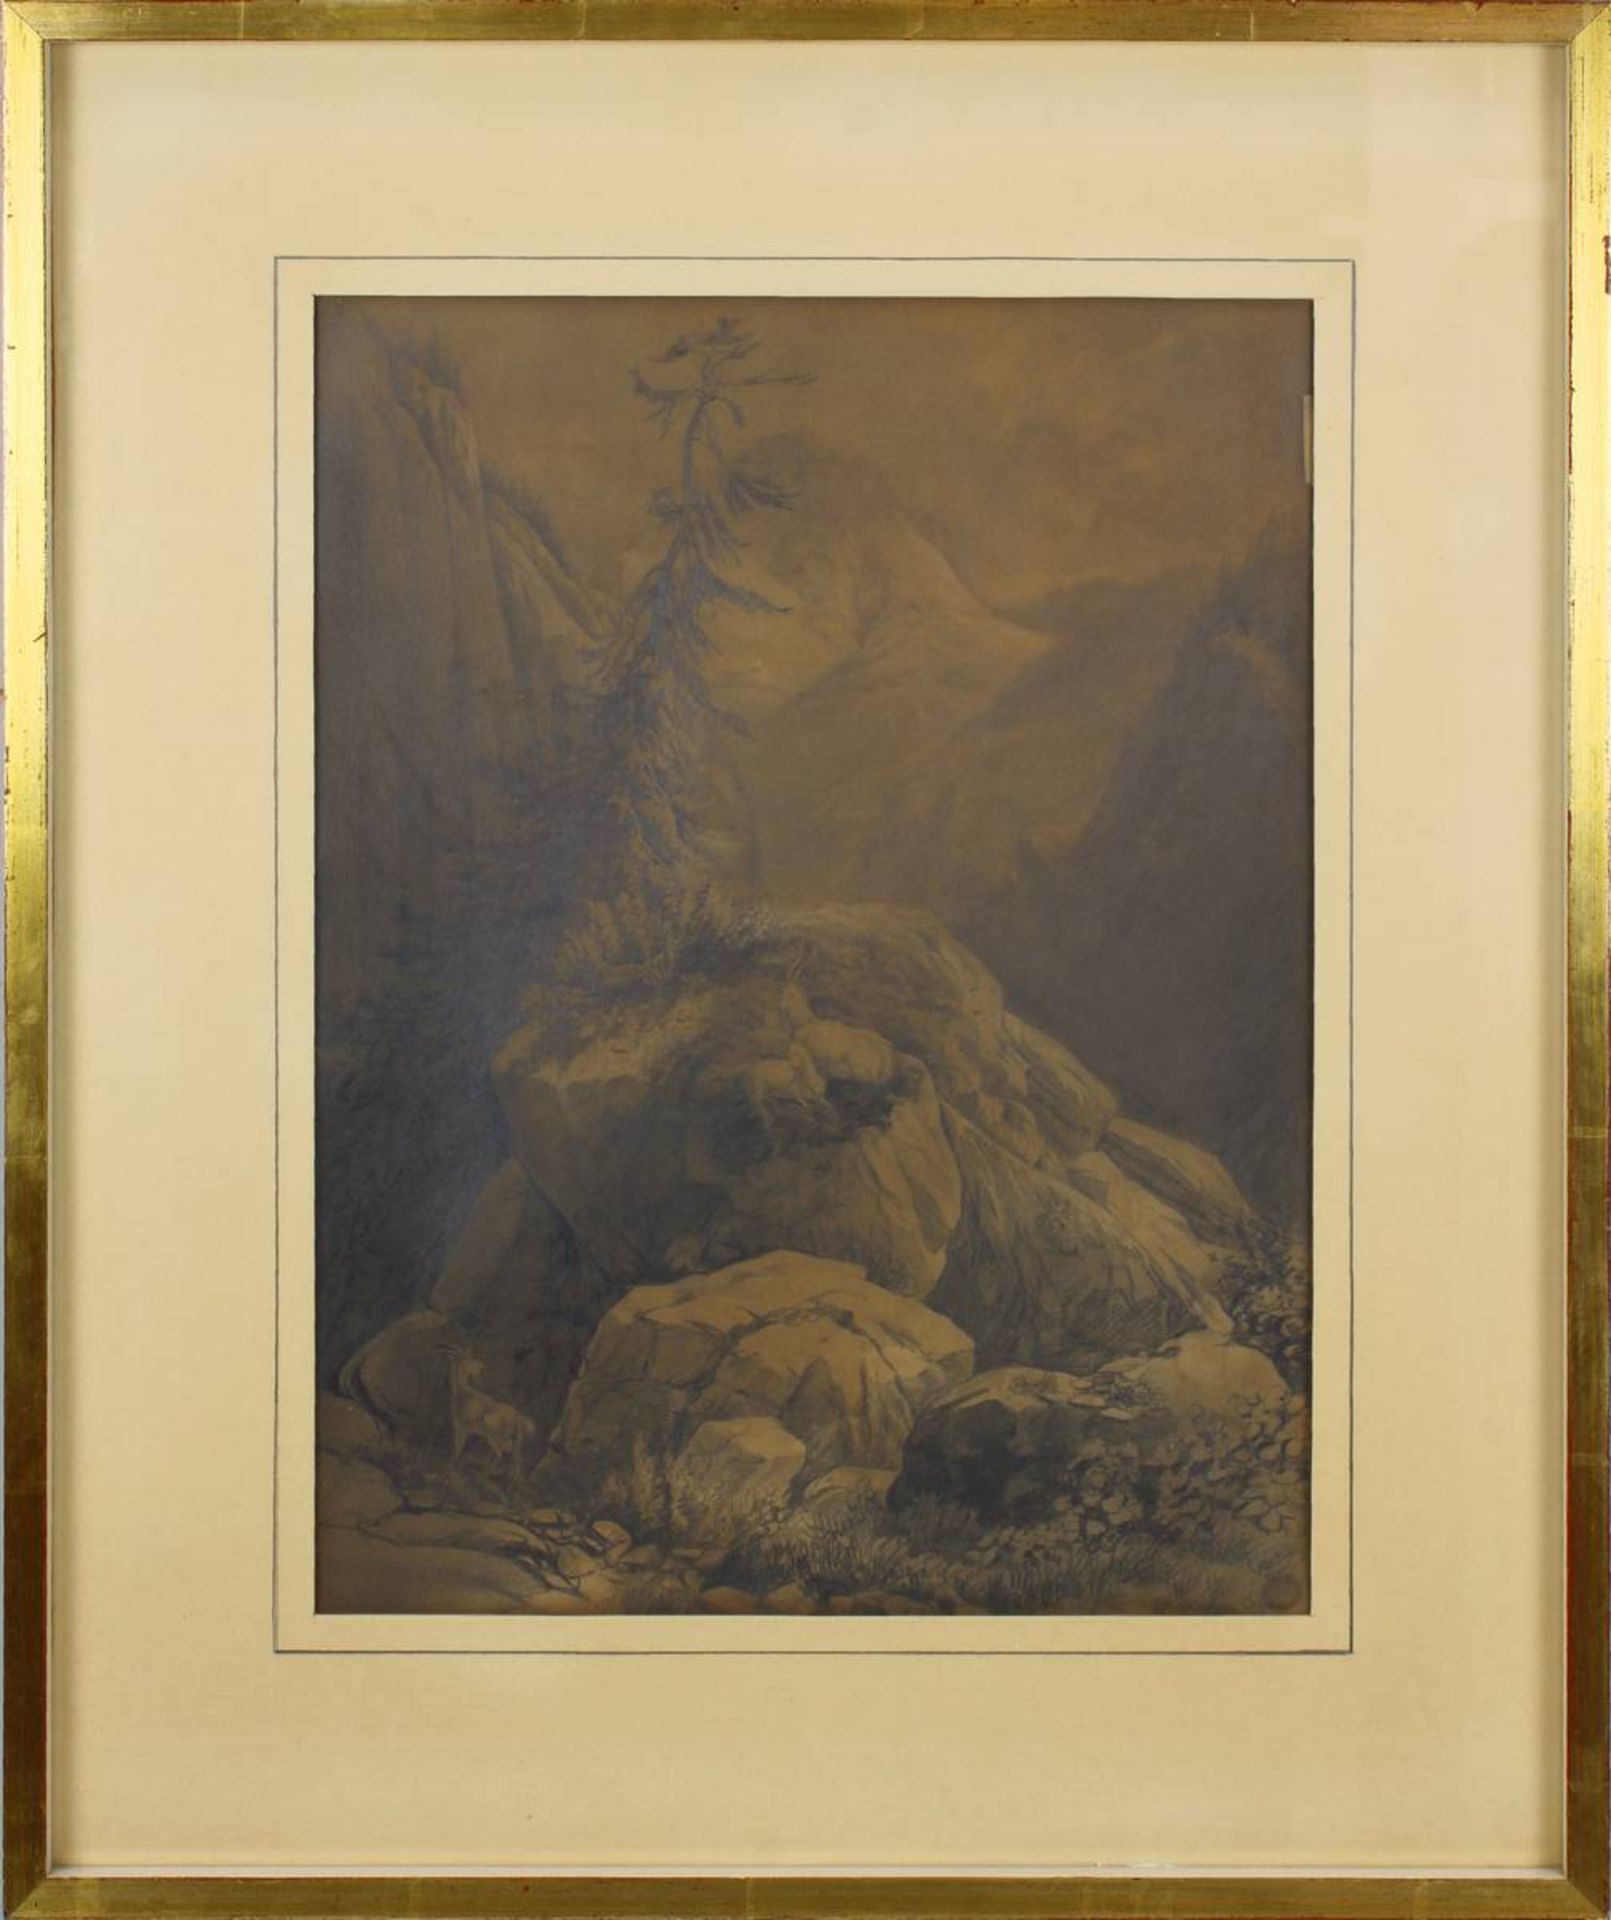 Schertel, Josef (Augsburg 1810 - 1869 München), attrib., Alpenlandschaft mit Felsen und Gämsen,